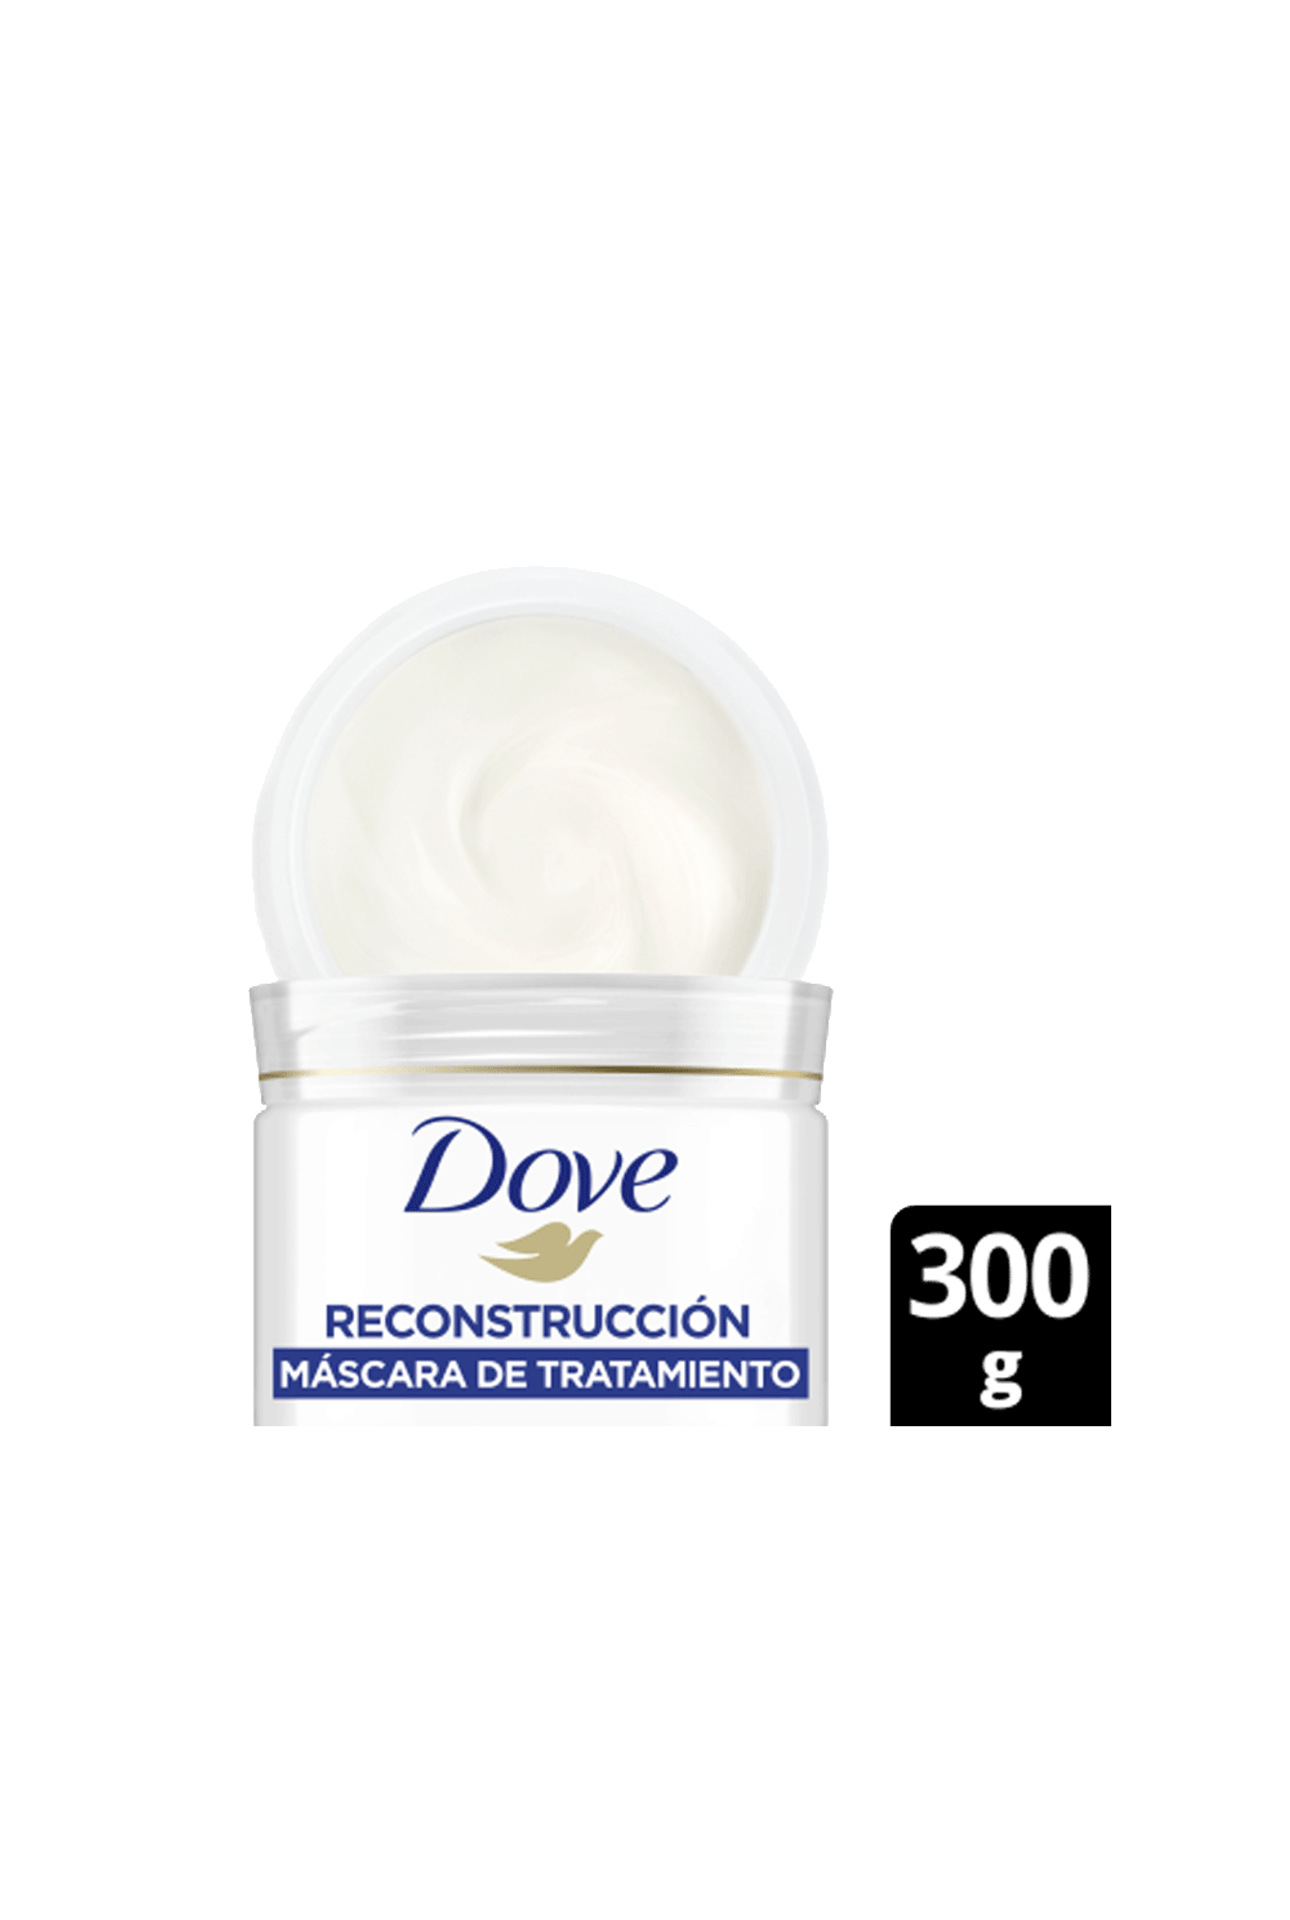 Mascara-de-Tratamiento-Dove-Reconstruccion-Completa-x-300-gr-Dove